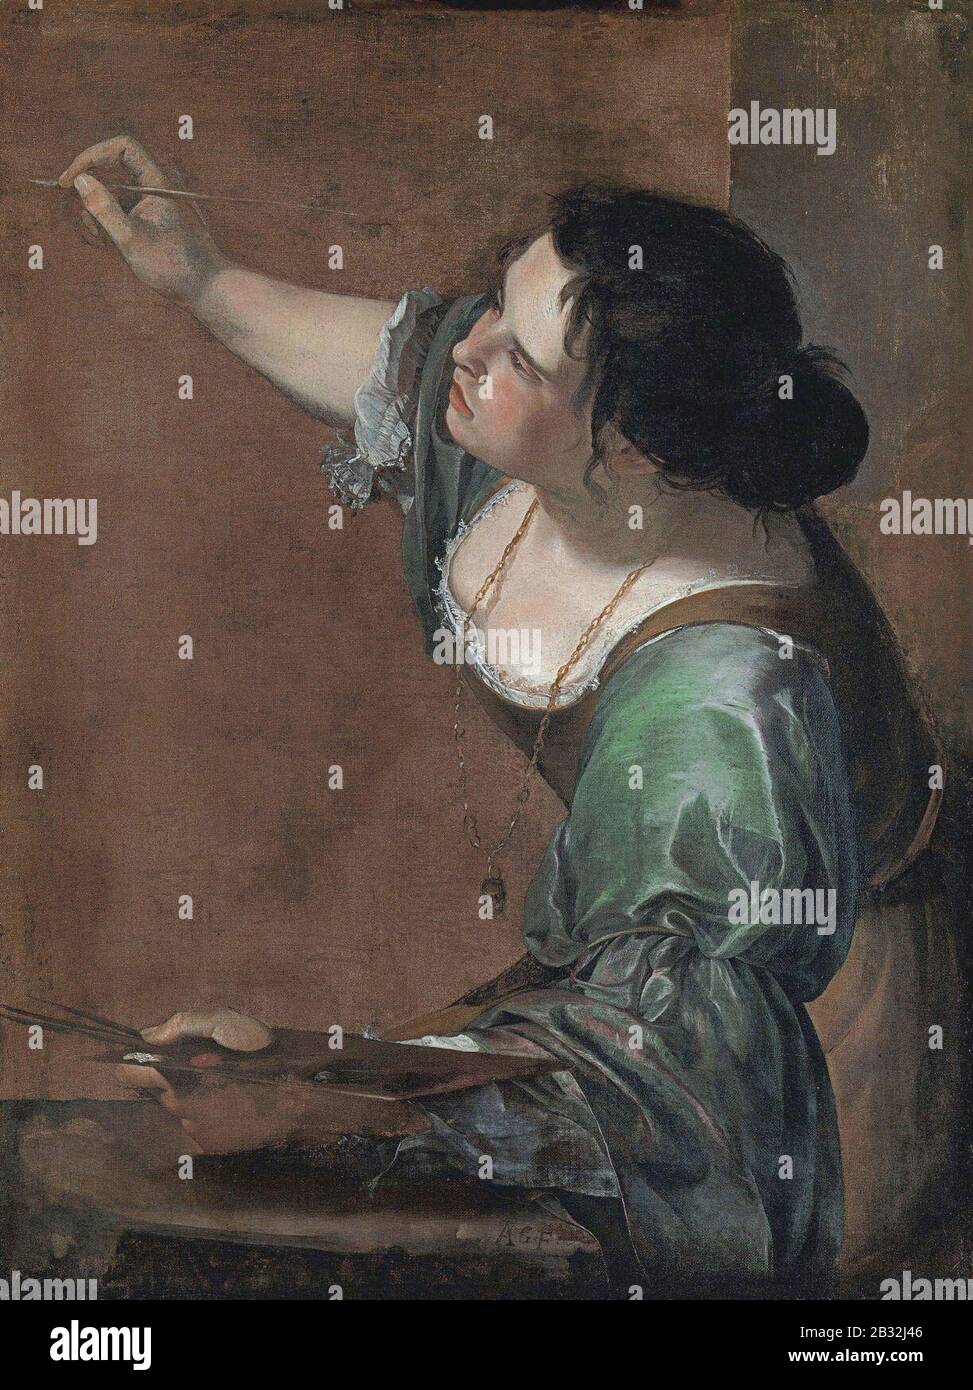 Autoritratto come l'Allegoria della Pittura - Artemisia GentileschiFXD. Foto Stock